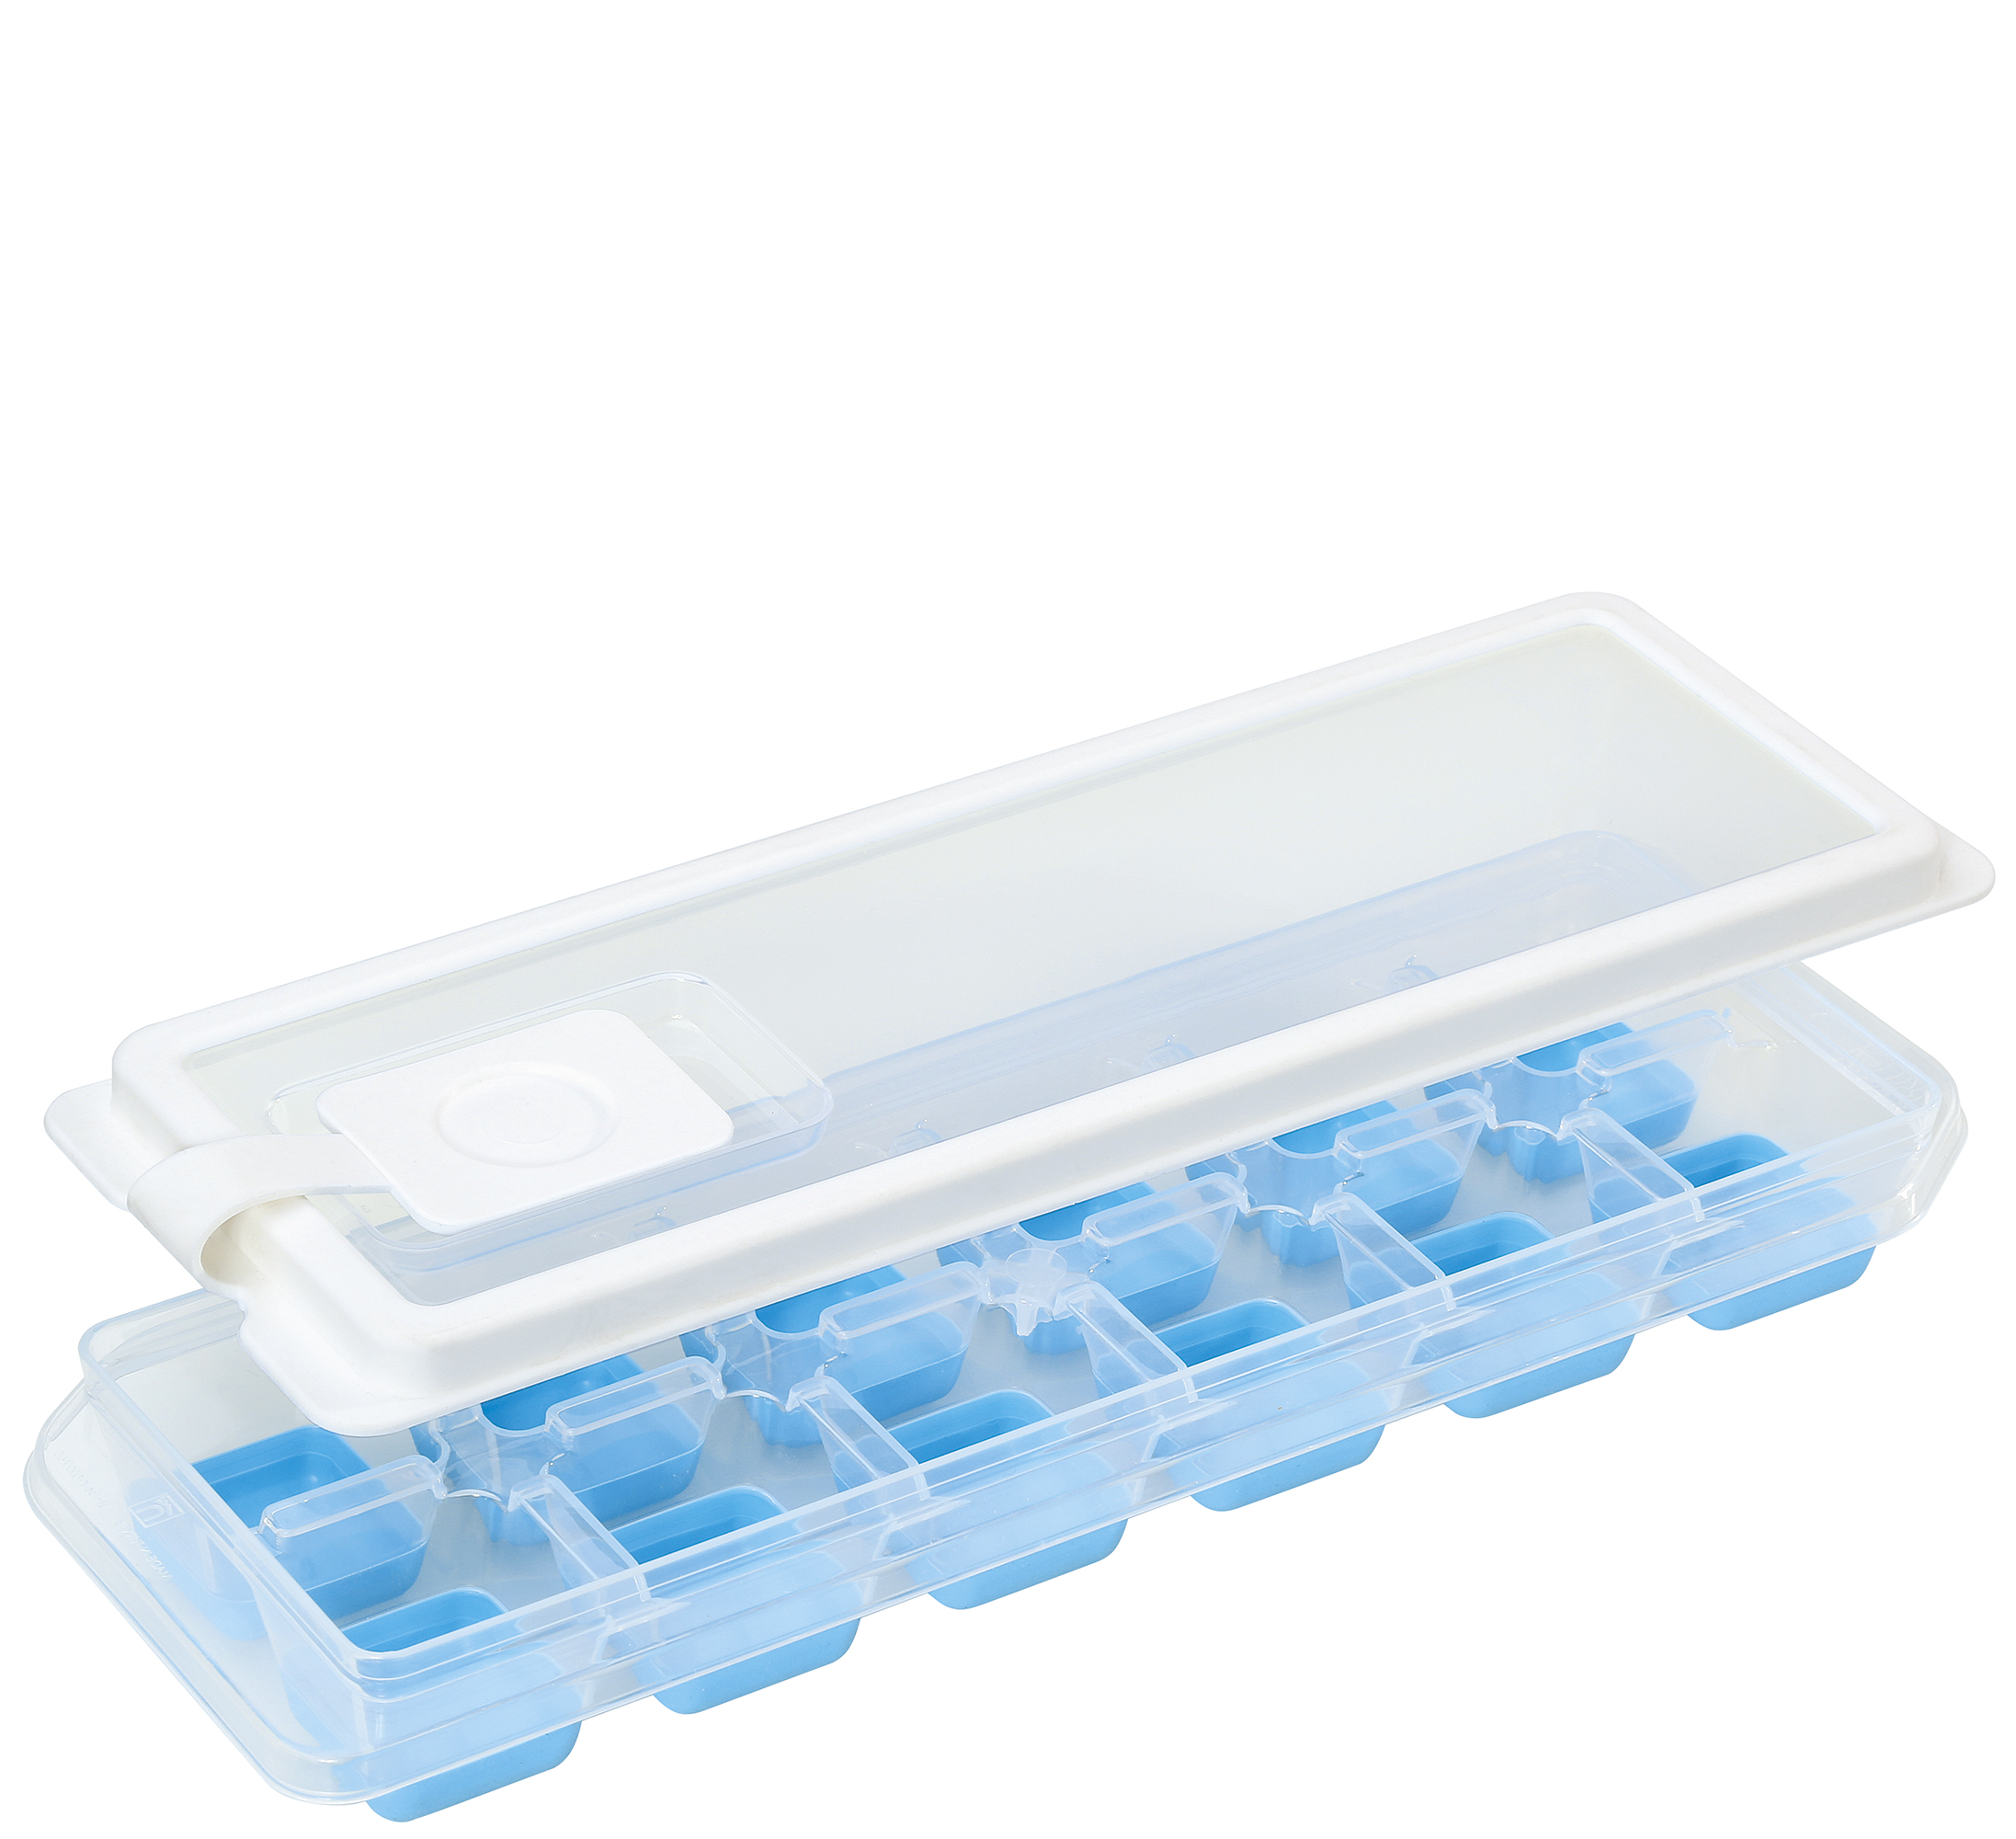 Eiswürfelform CUBO PLUS Inkl. Deckel mit Einfüllöffnung Mit flexiblem Bode Für 12 Eiswürfel Hochwertiger BPA-freier Kunststof